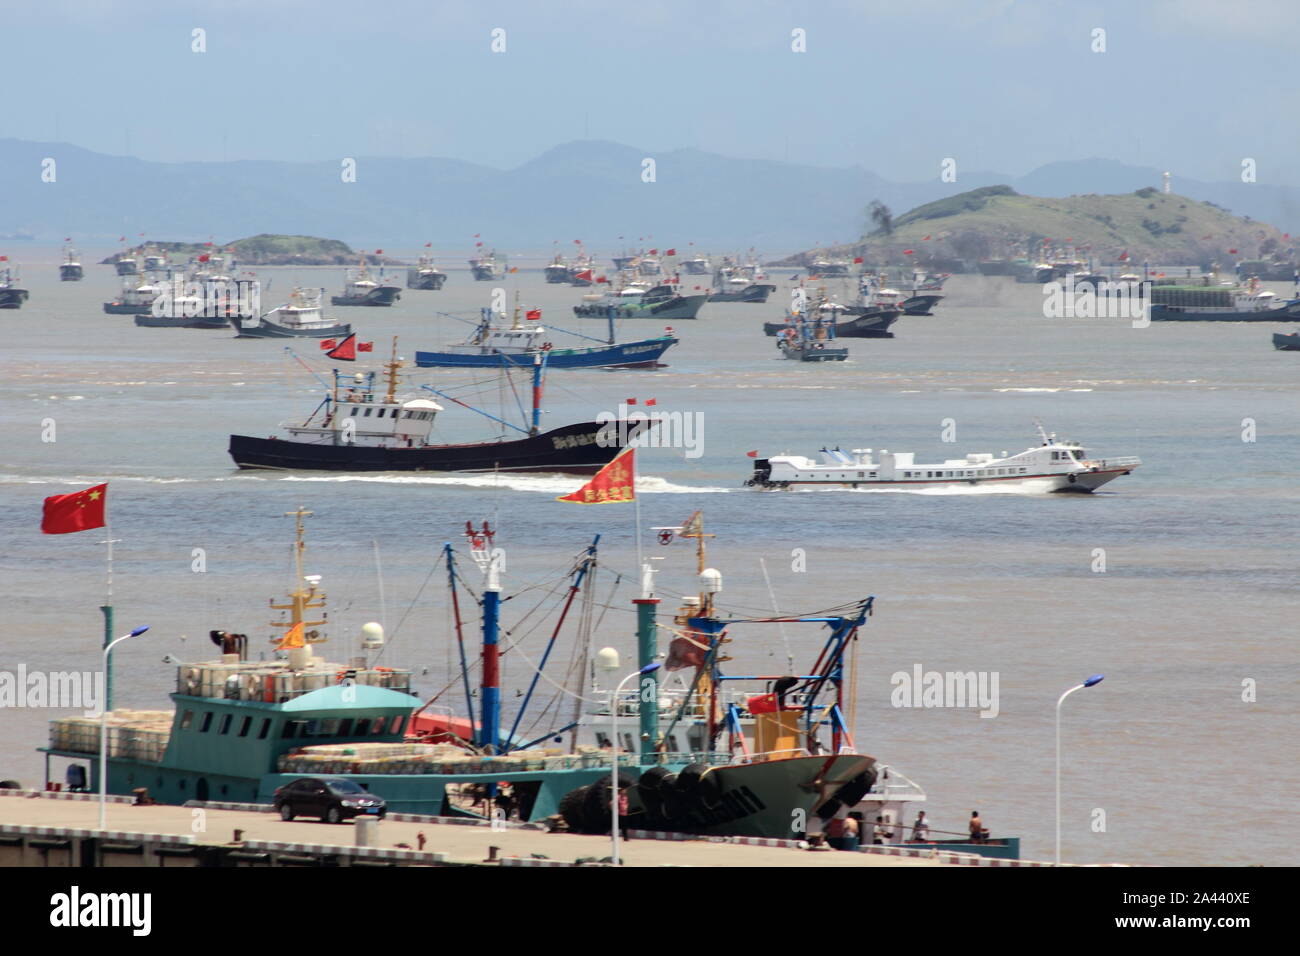 Perché la stagione di pesca del 2019 inizia a mezzogiorno, astronomico di barche da pesca andare al di fuori del porto nella contea di Daishan, Zhoushan city, est della Cina di Zhejiang Foto Stock